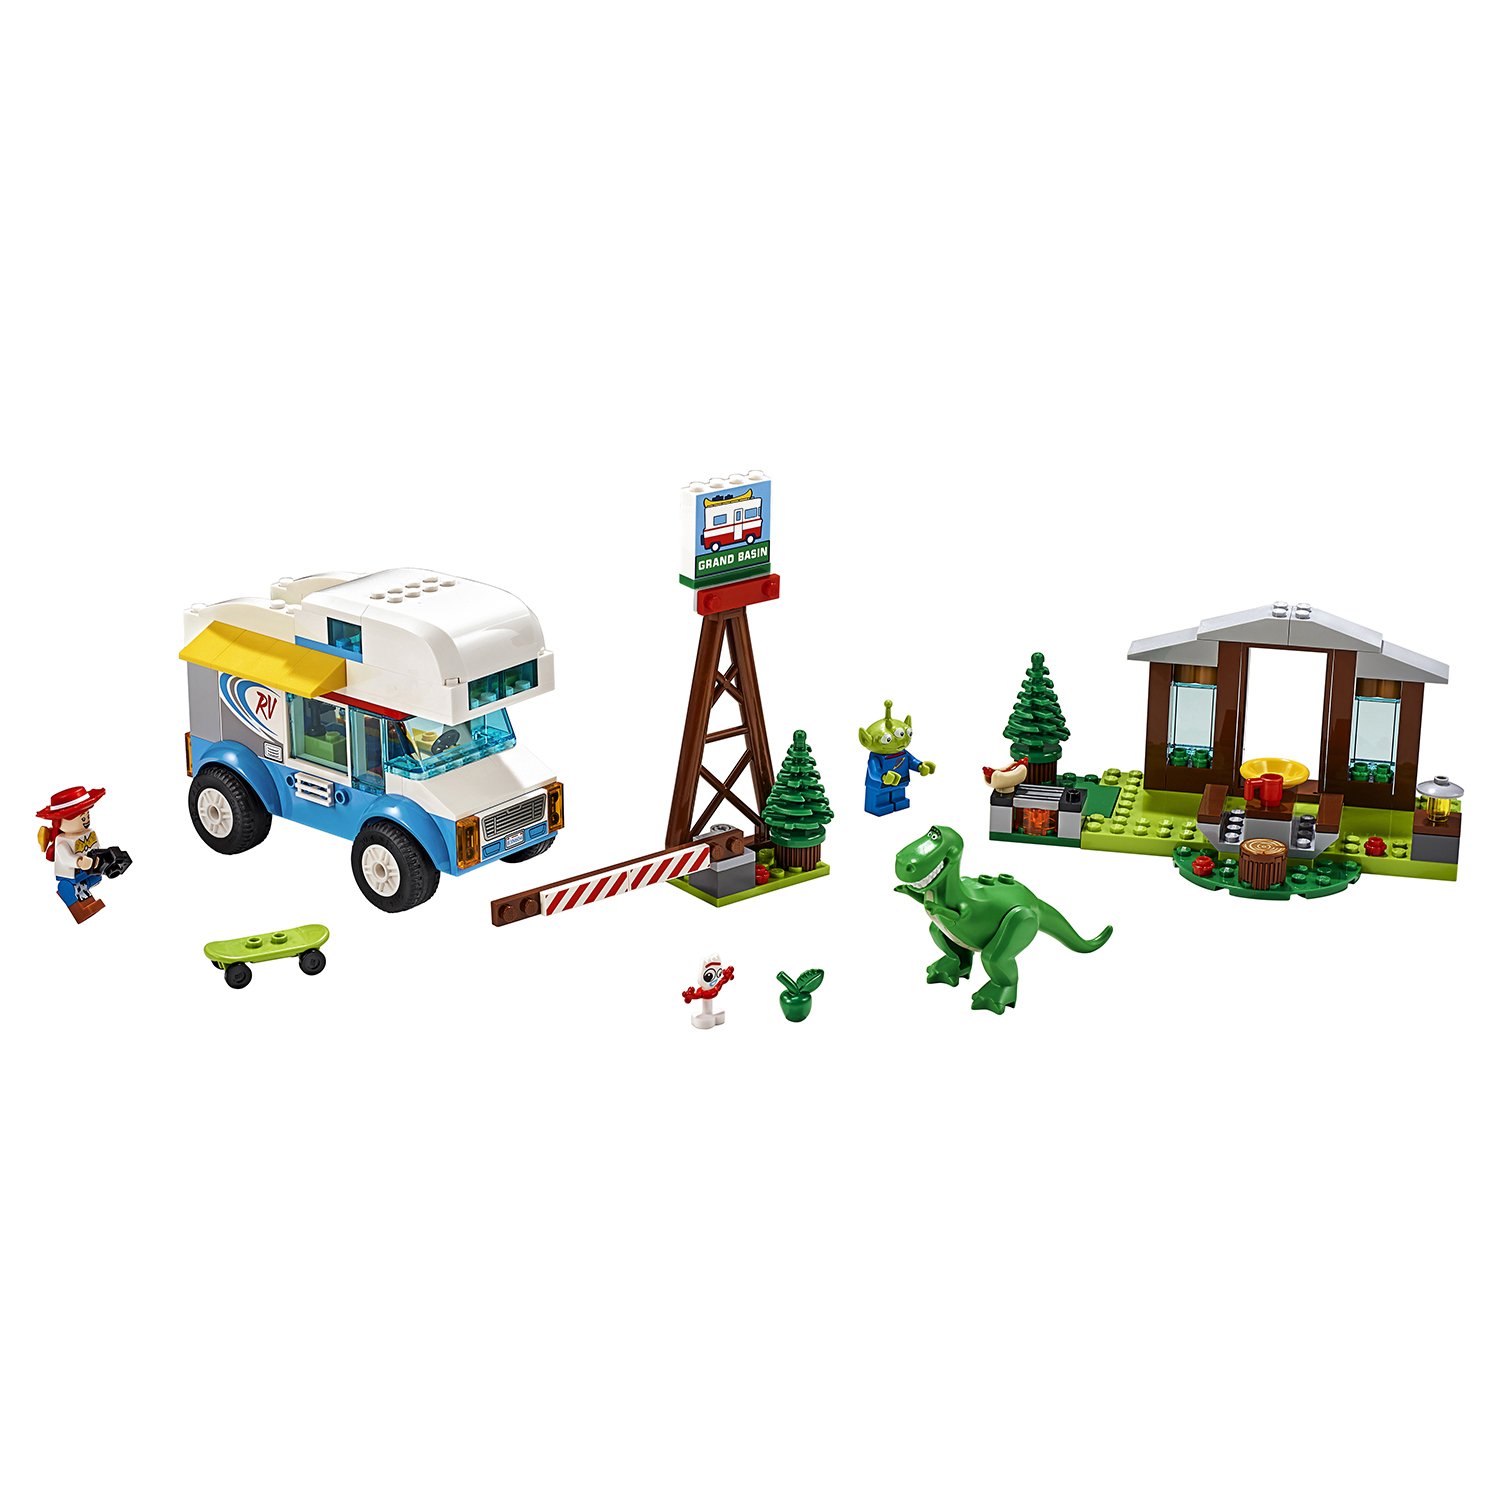 Конструктор LEGO Toy Story 4 «Весёлый отпуск» 10769, 178 деталей